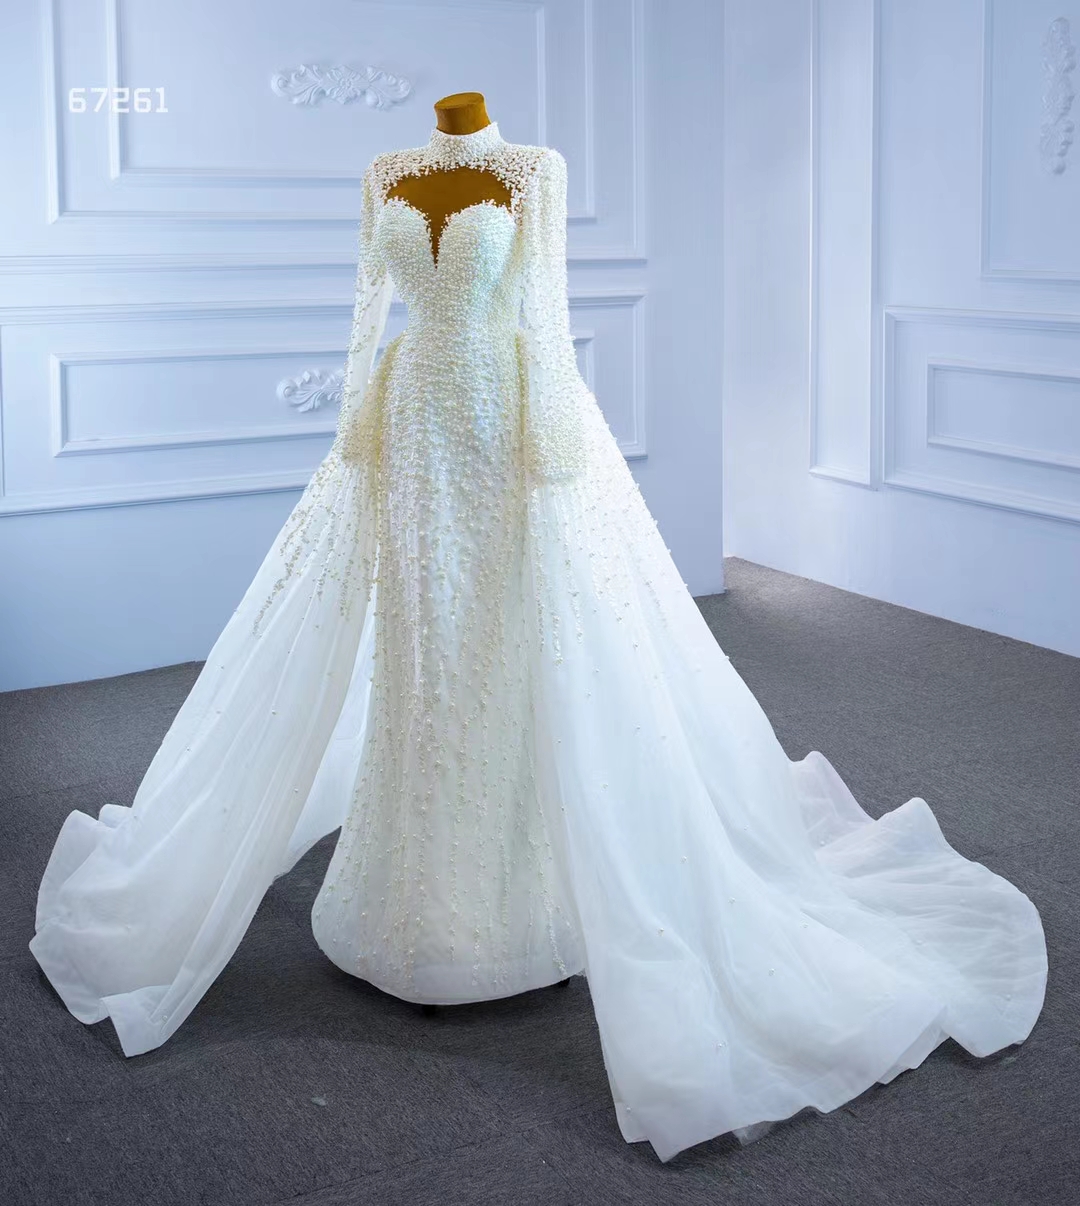 Luxus-Brautkleid im Meerjungfrau-Schleppe-Stil, weiß, Stehkragen, lange Ärmel, SM67261